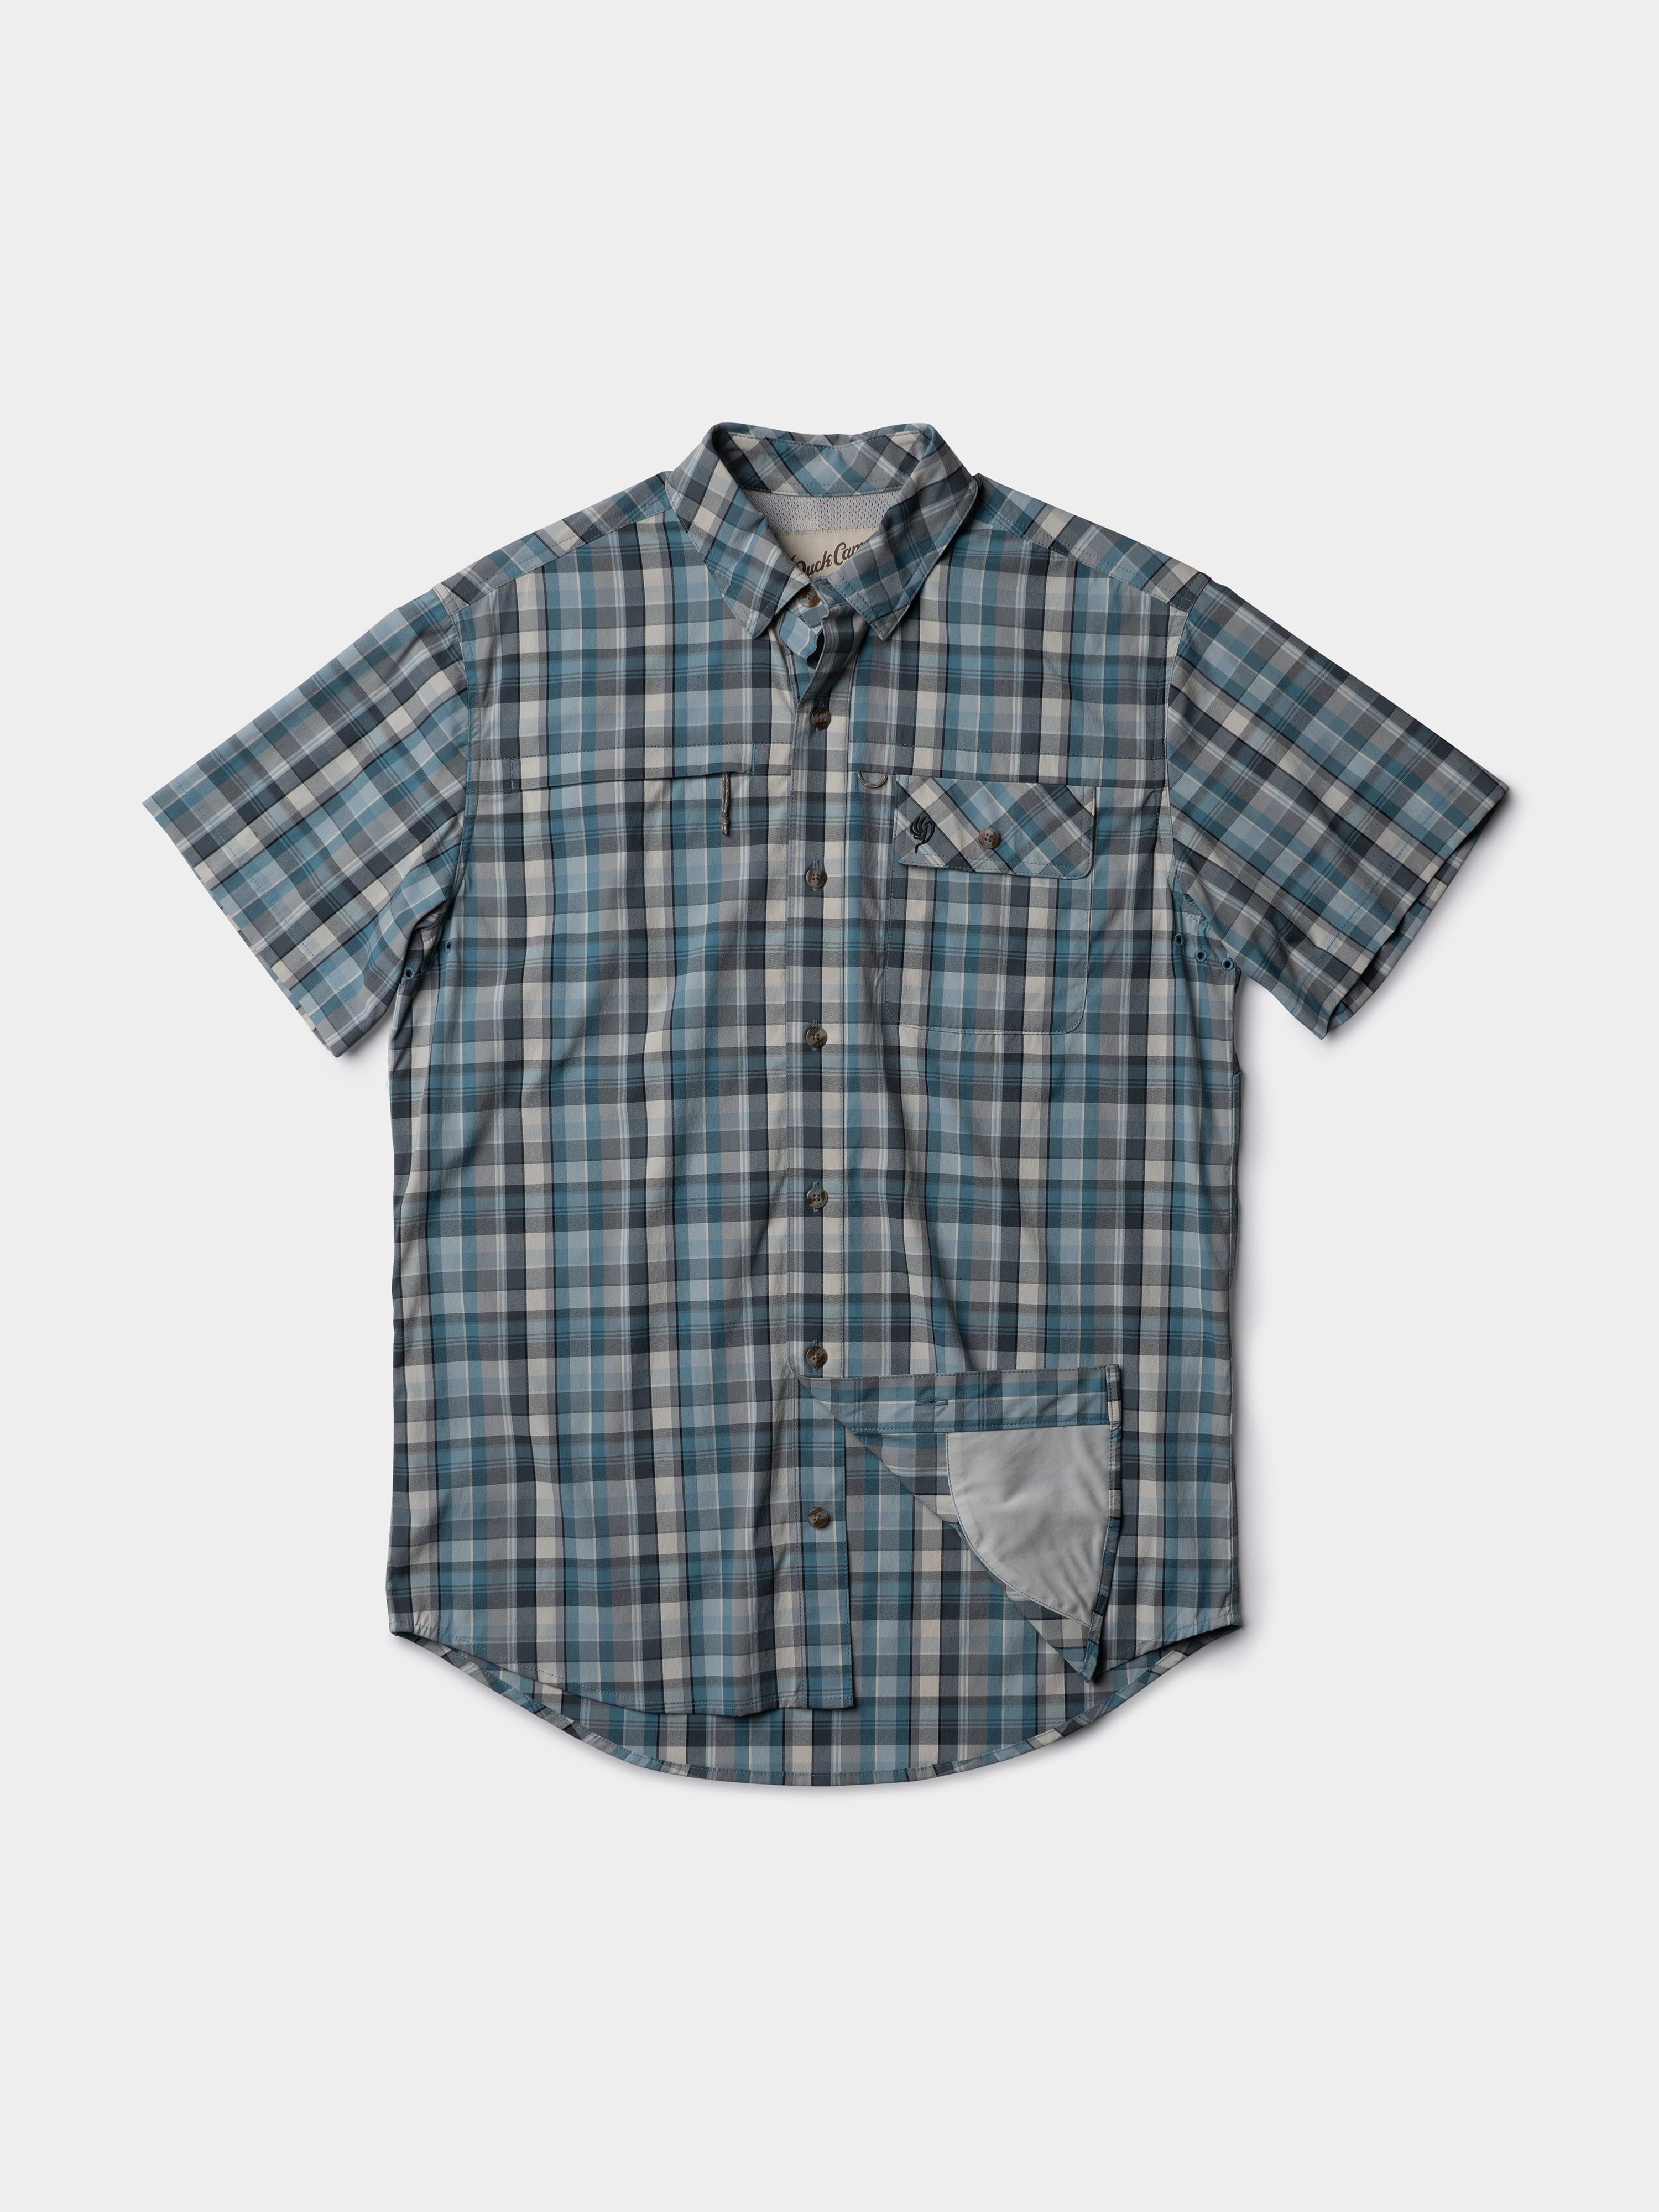 Poncho Fishing Shirt | Grey Blue Plaid Short Sleeve